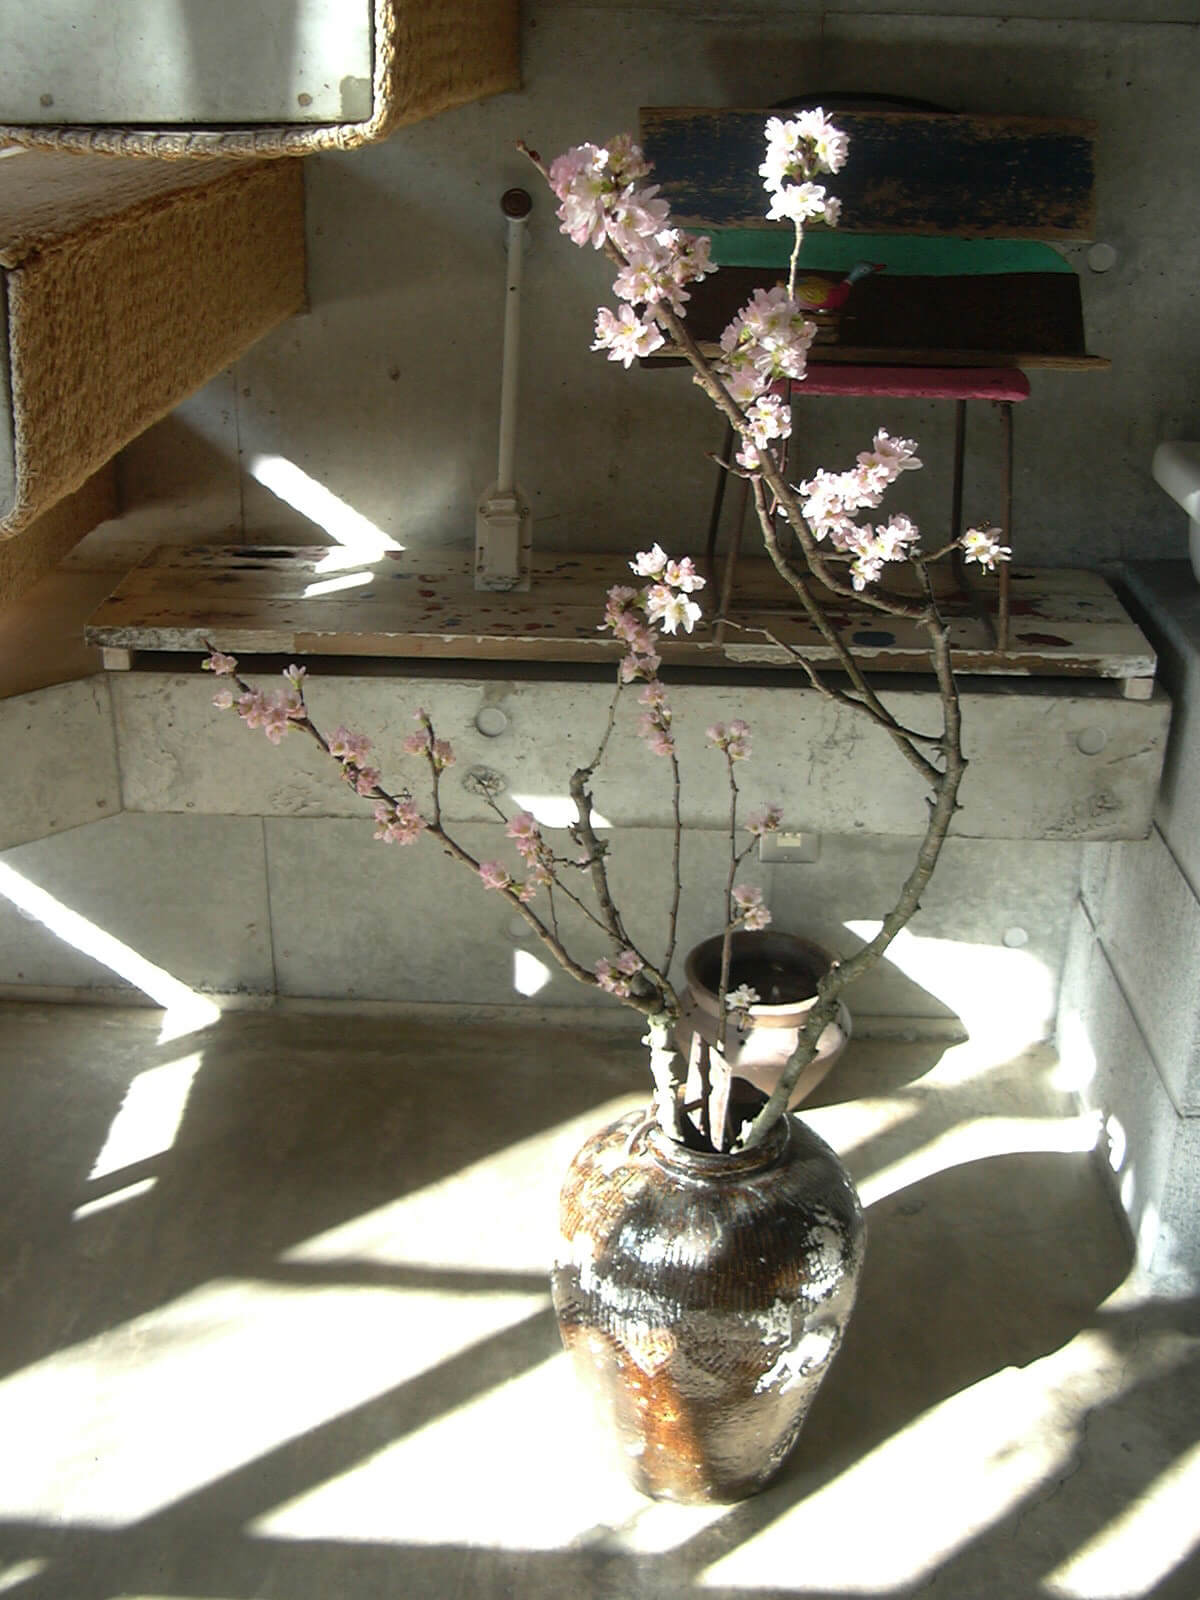 お客さまから桜の枝をいただいたので、花瓶にさして飾りました